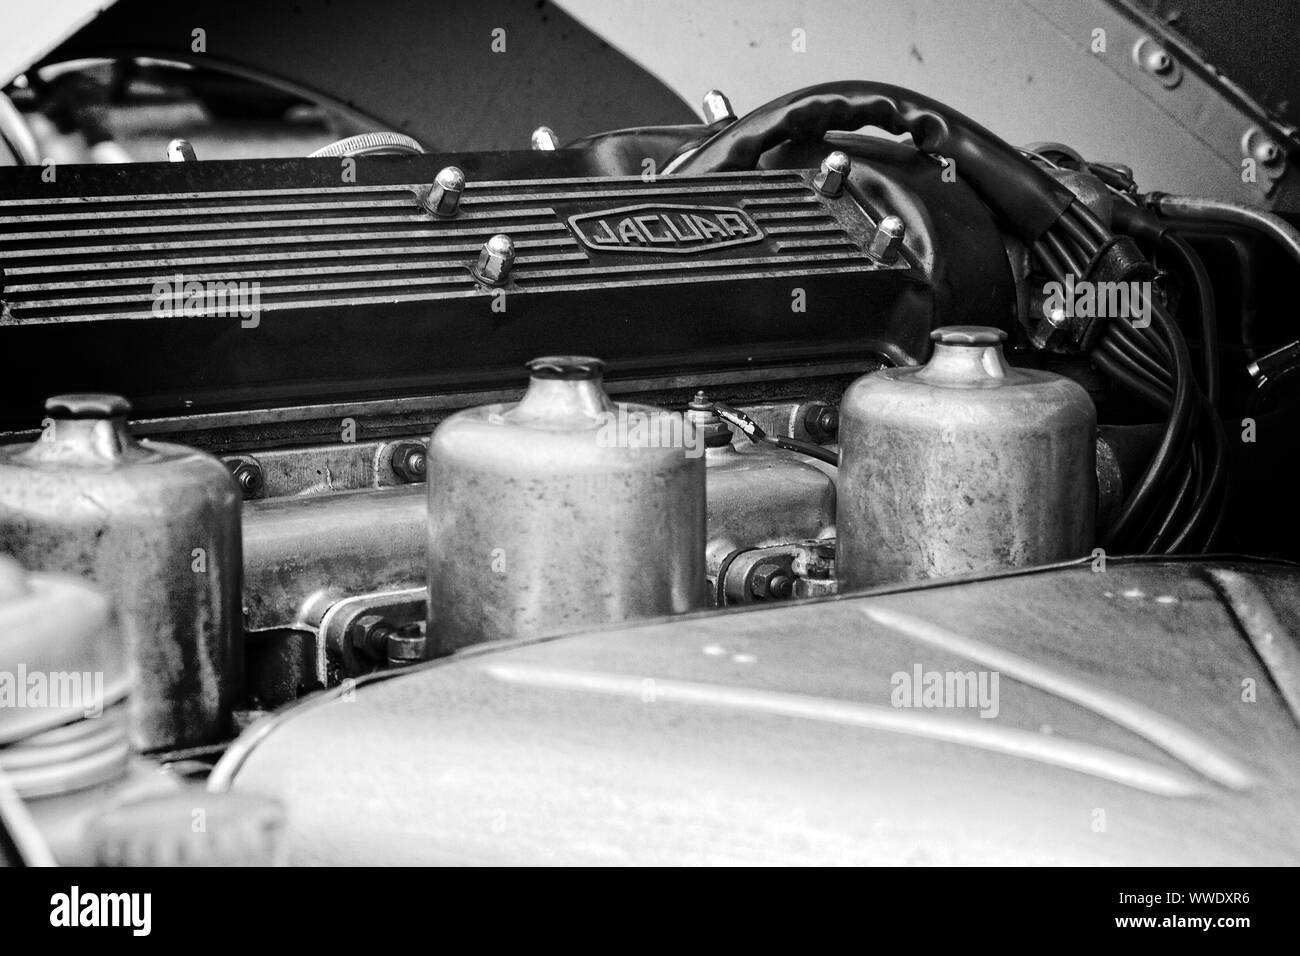 Schwarz-weiß-Bild von einem Jaguar Sportwagen Motor Übersicht Ventildeckel und Vergaser. Stockfoto